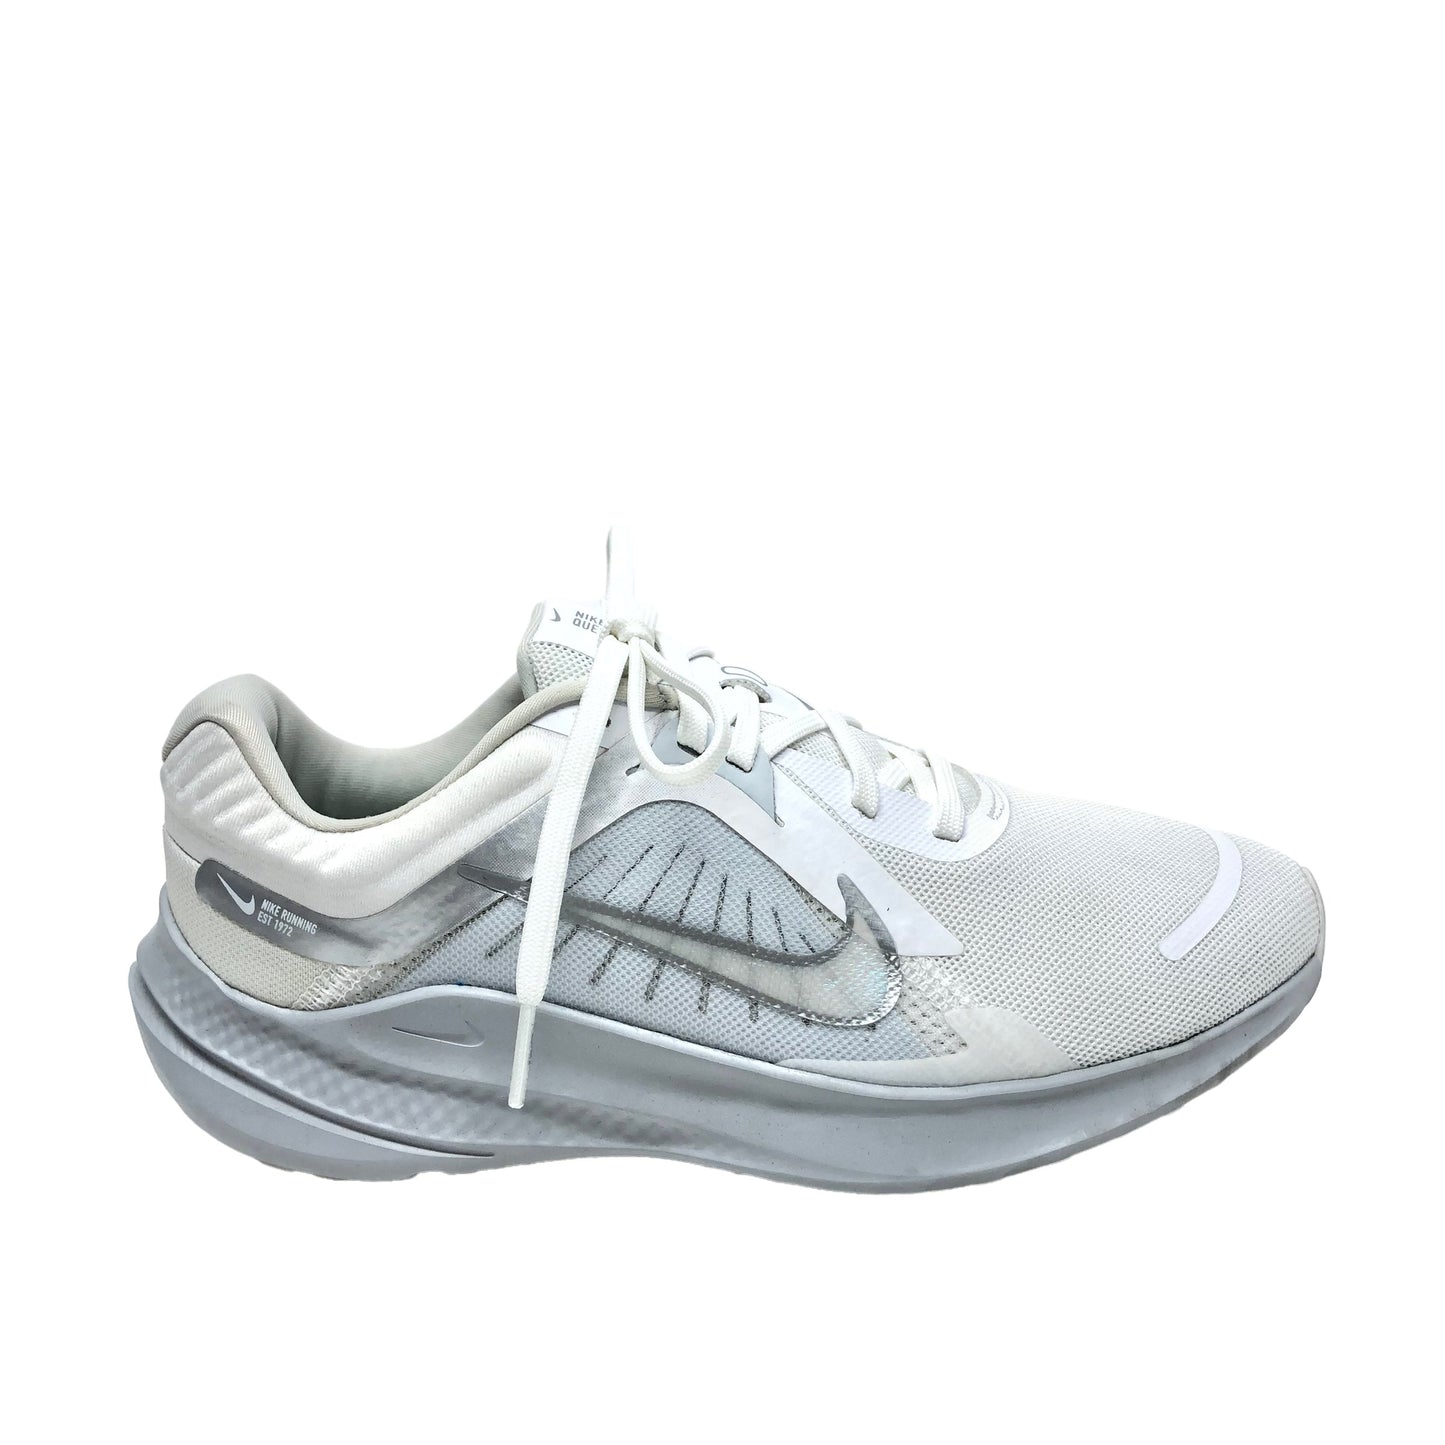 White Shoes Athletic Nike, Size 7